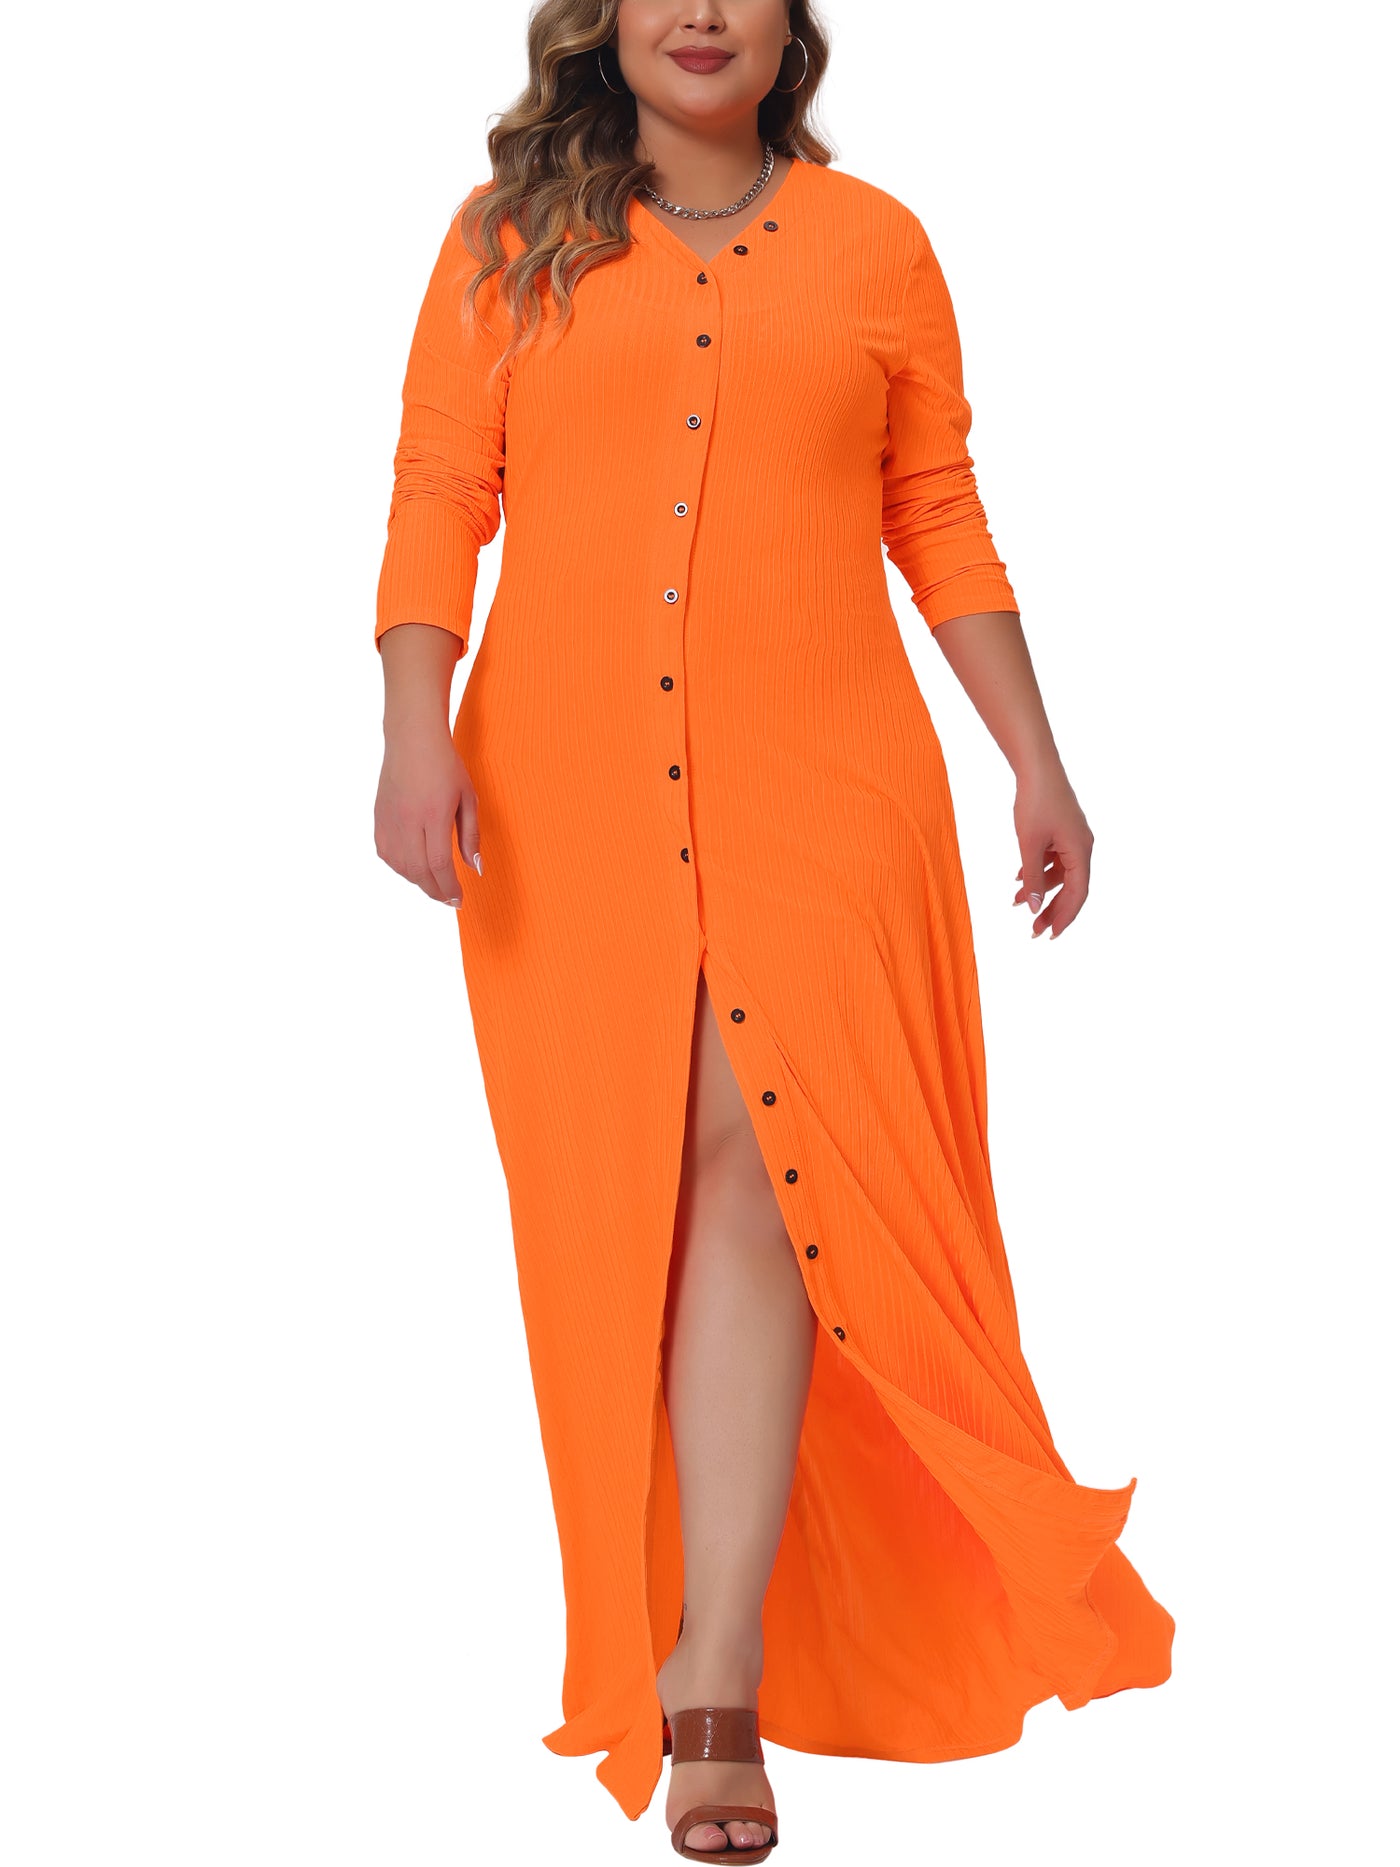 Bublédon Plus Size Dresses for Women Side Split Long Sleeve Button Down Cardigans Swimsuit Cover Ups Beach Dress